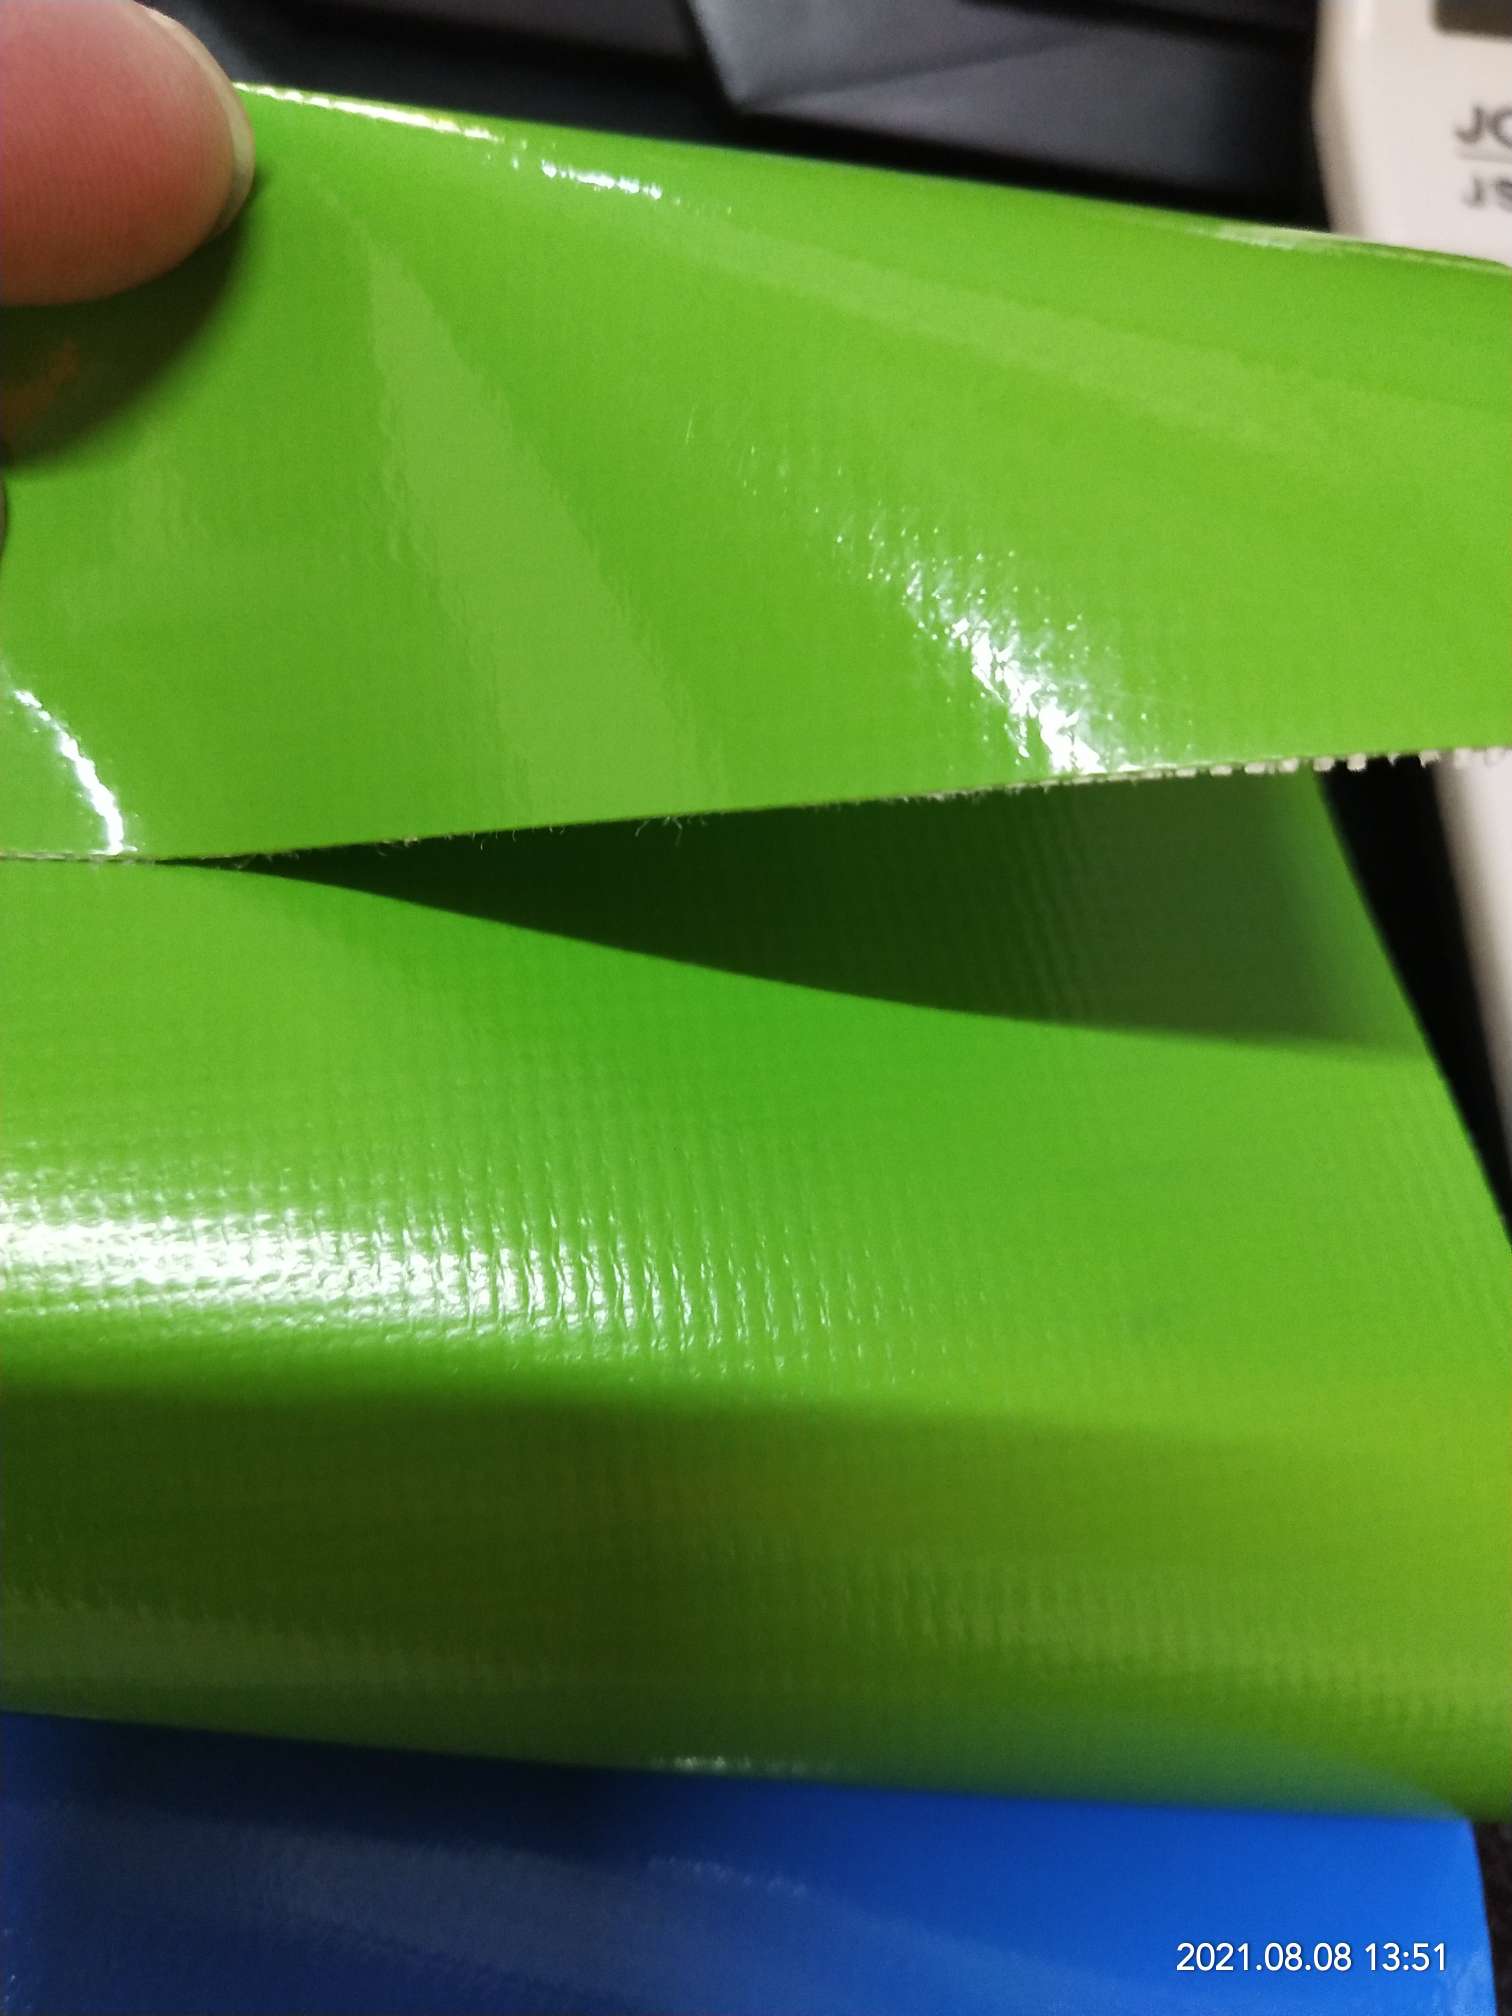 优质光面0.47mm厚浅绿色PVC夹网布  箱包布  机器罩家具罩  体育游乐产品  格种箱包袋专用面料详情图4